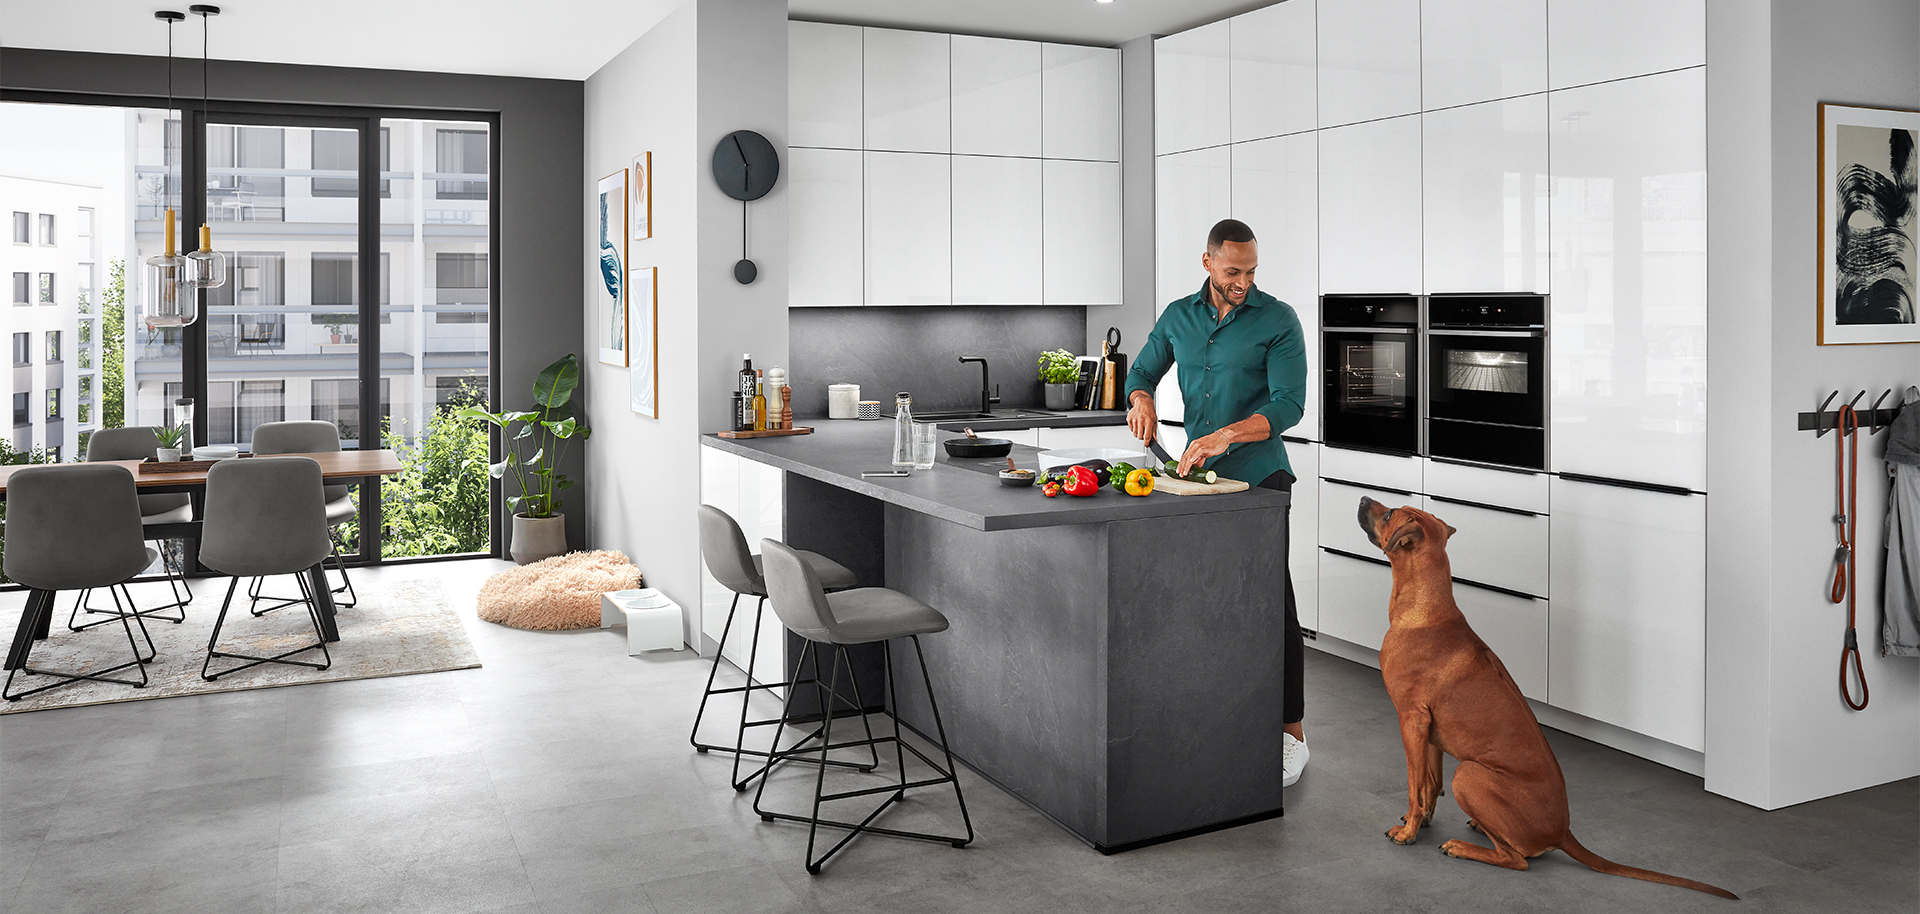 Stylowa nowoczesna scena kuchenna z mężczyzną przygotowującym jedzenie na wyspie kuchennej, przyglądającym się pieskiem, odzwierciedlająca wygodny, współczesny styl życia w domu.